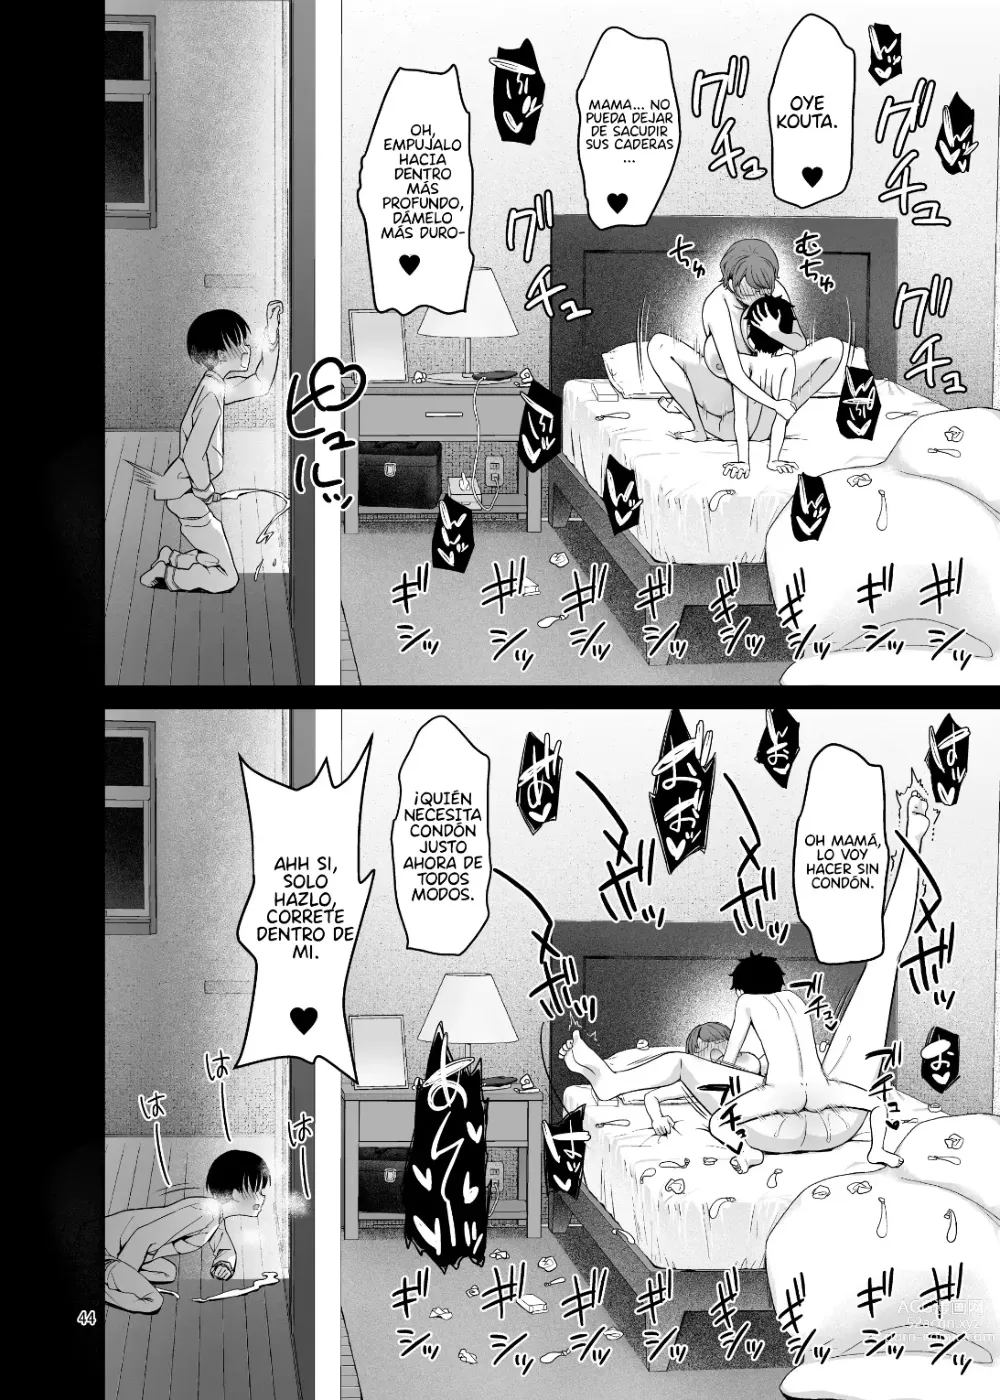 Page 43 of doujinshi Mi mamá sólo se vuelve pervertida delante de mi hermano.